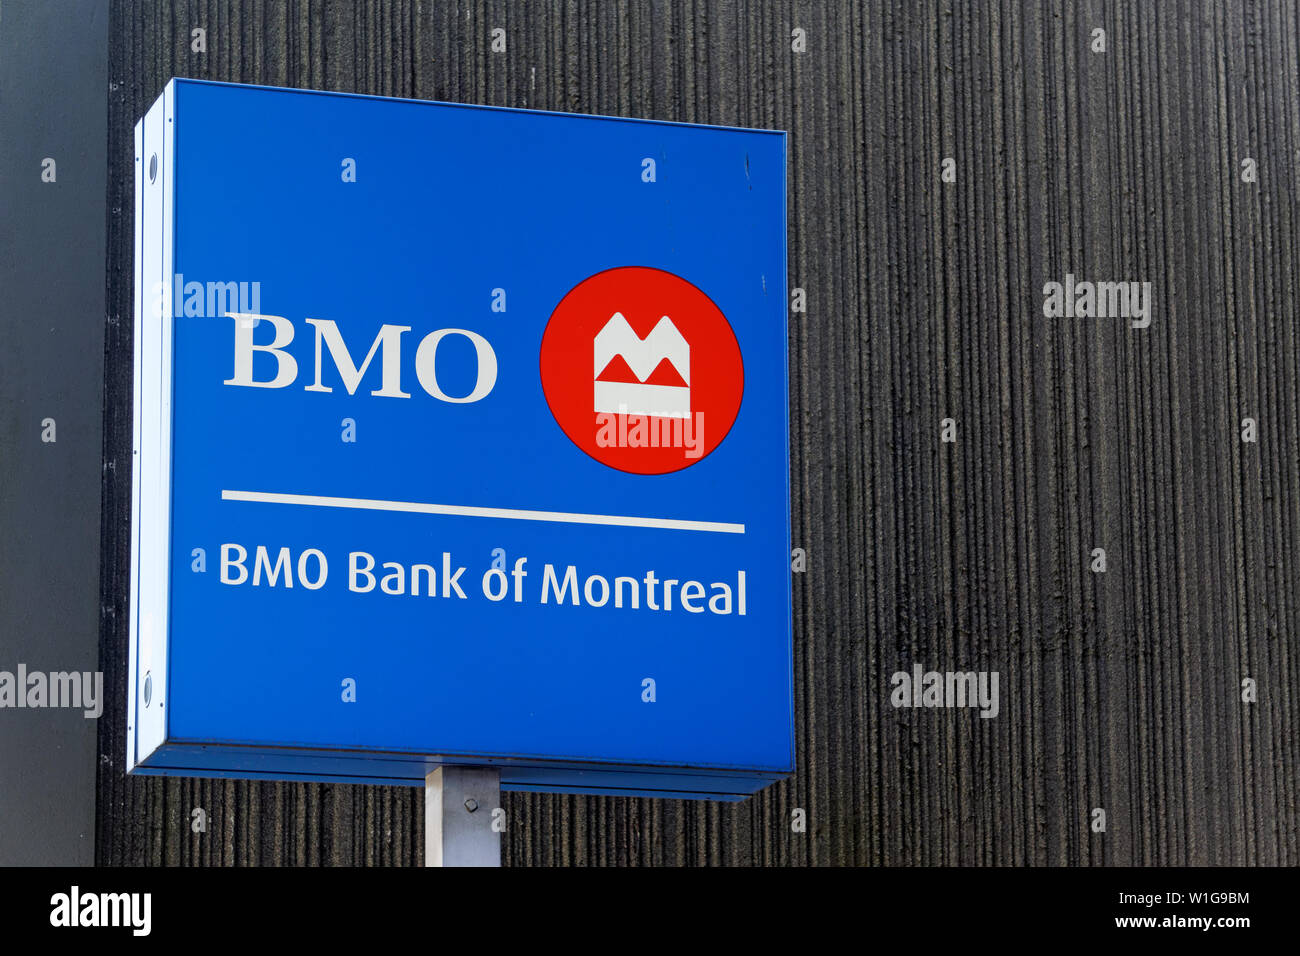 Primer plano de Bank of Montreal BMO firmar y logotipo, Vancouver, BC, Canadá Foto de stock